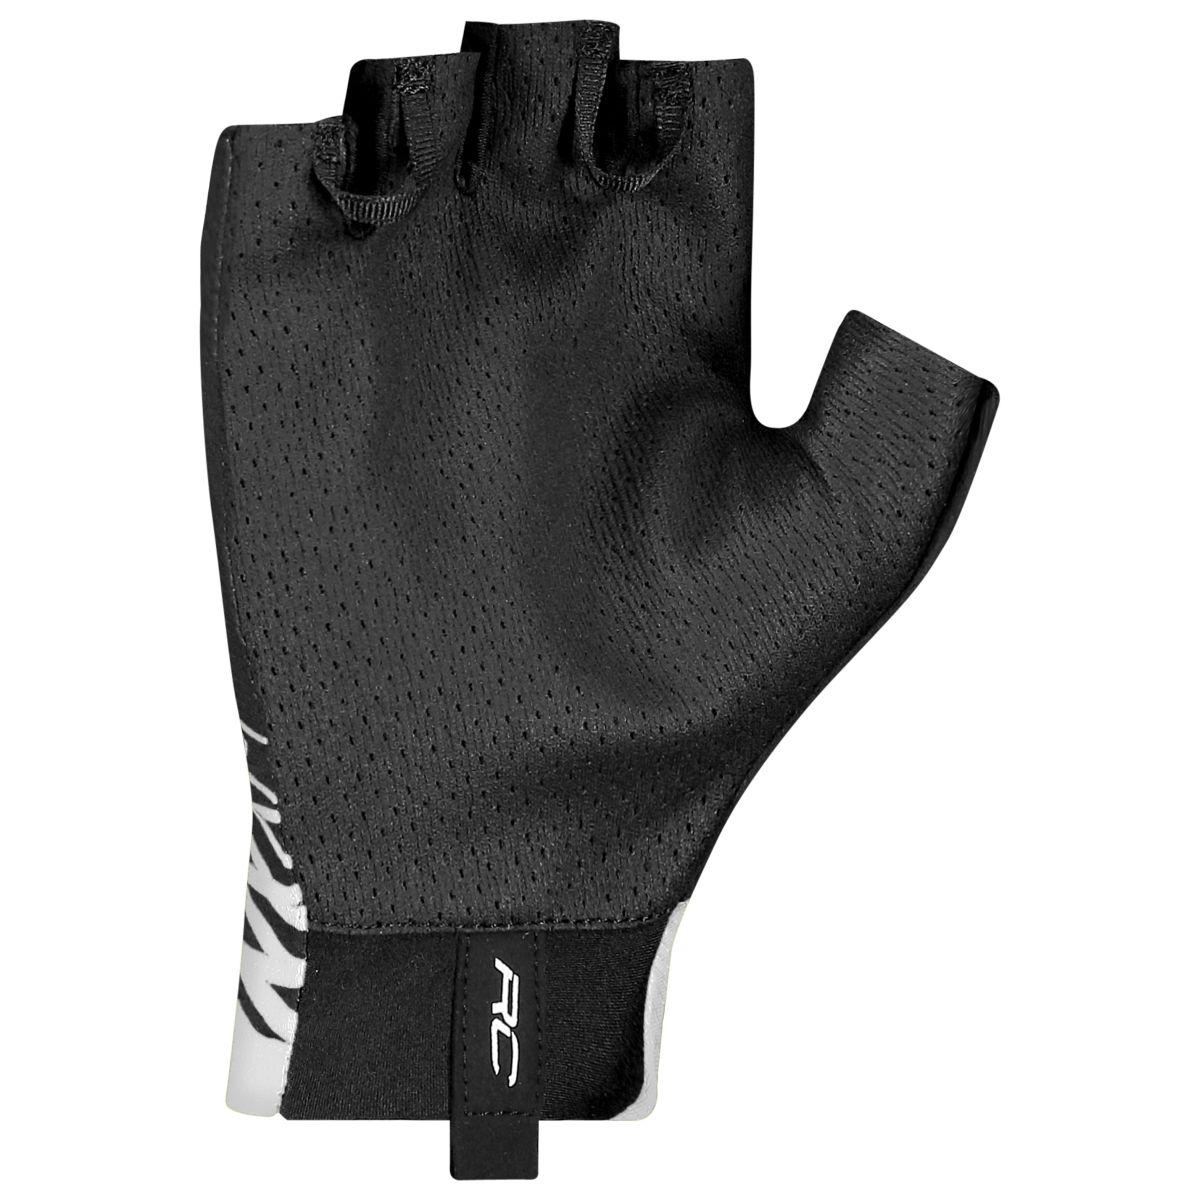 Scott RC Pro Fahrrad Handschuhe kurz schwarz/weiß 2019